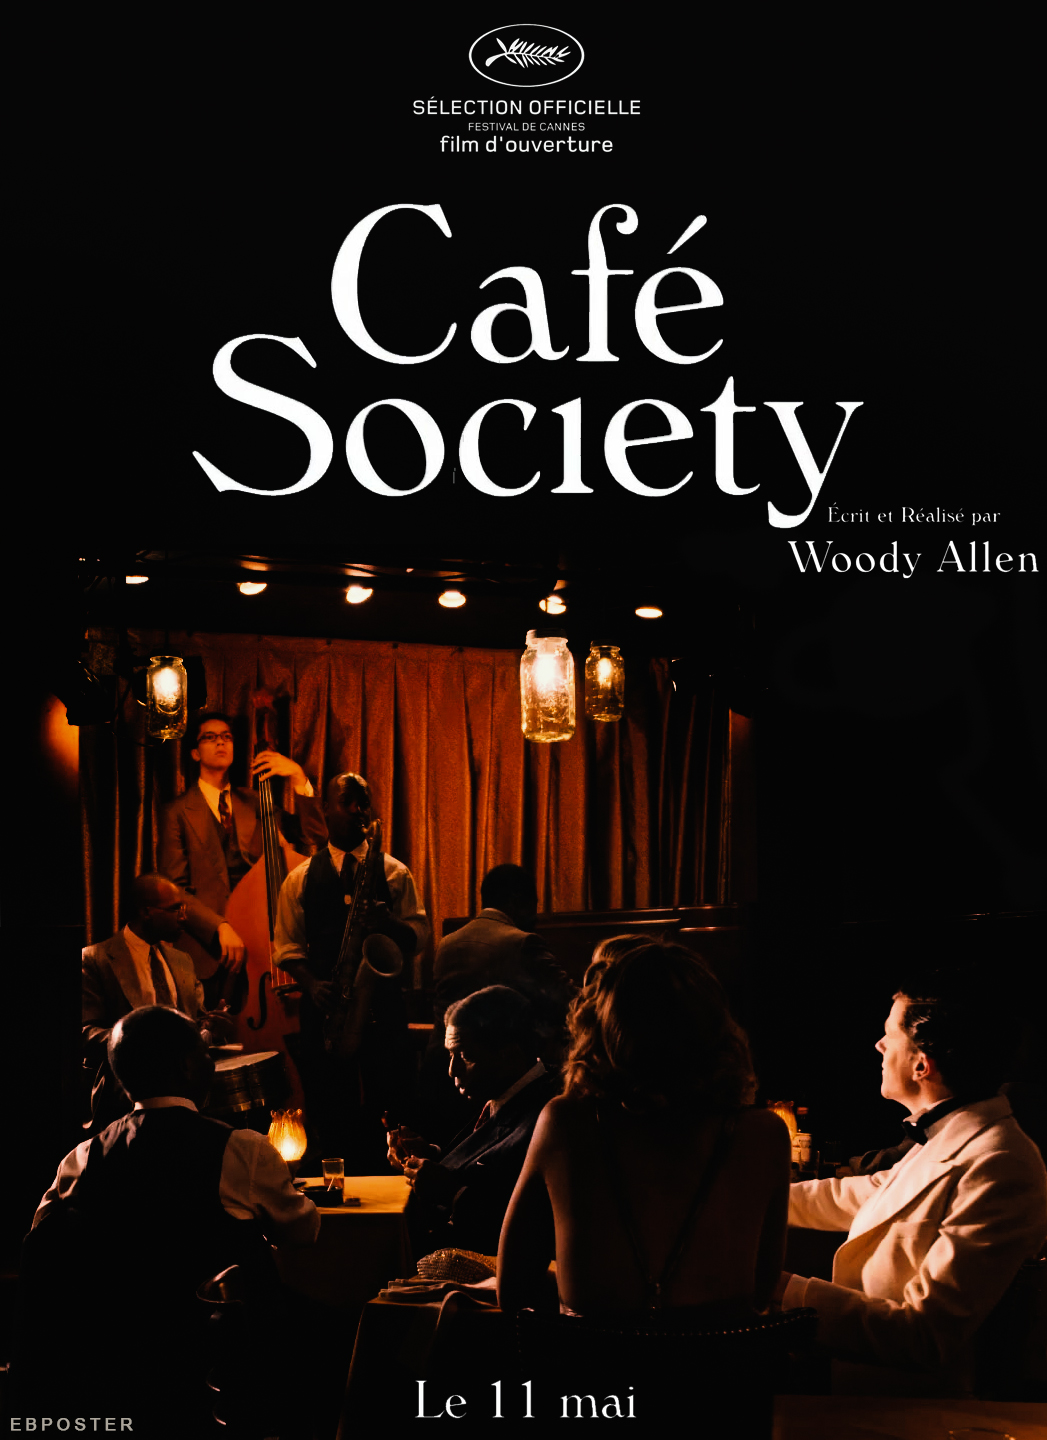 Café Society (2016) directed by Woody Allen – Jesse Eisenberg, Kristen Stewart ...1047 x 1440